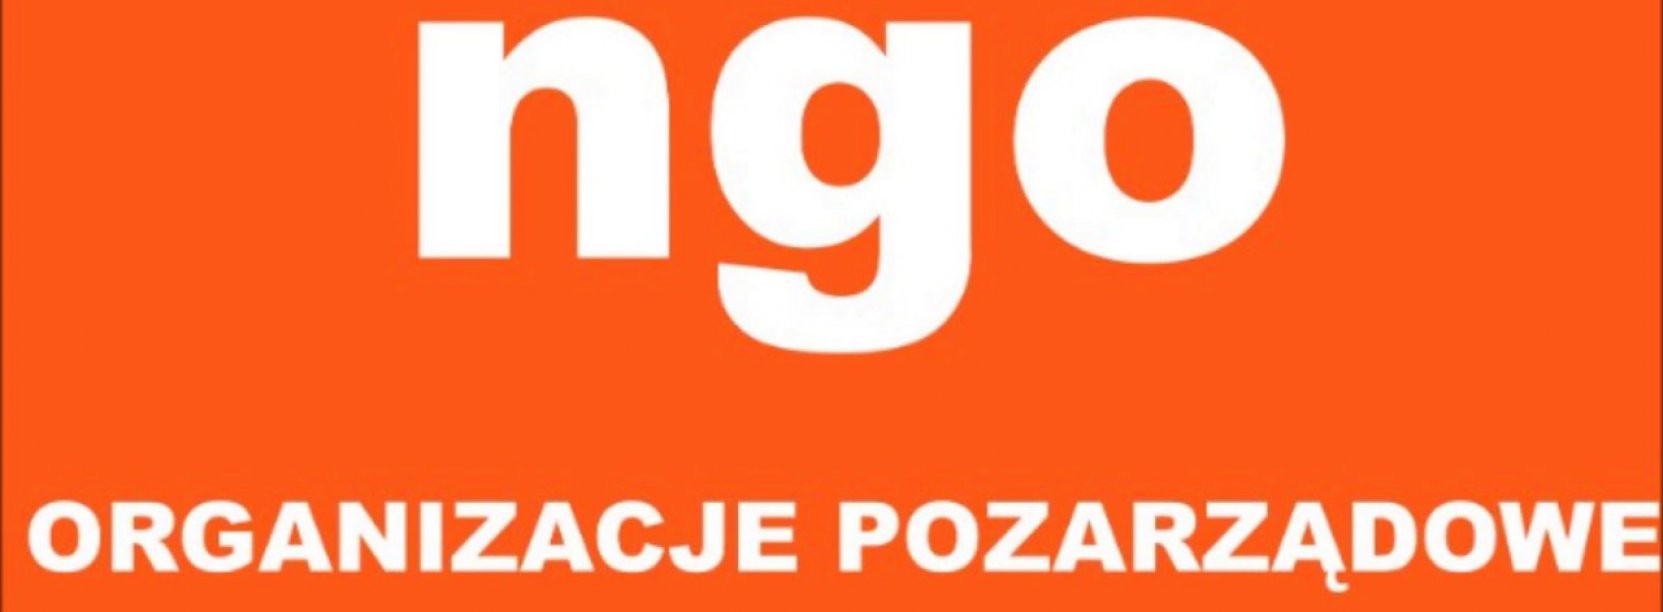 Napis NGO - organizacje pozarządowe na pomarańczowym tle